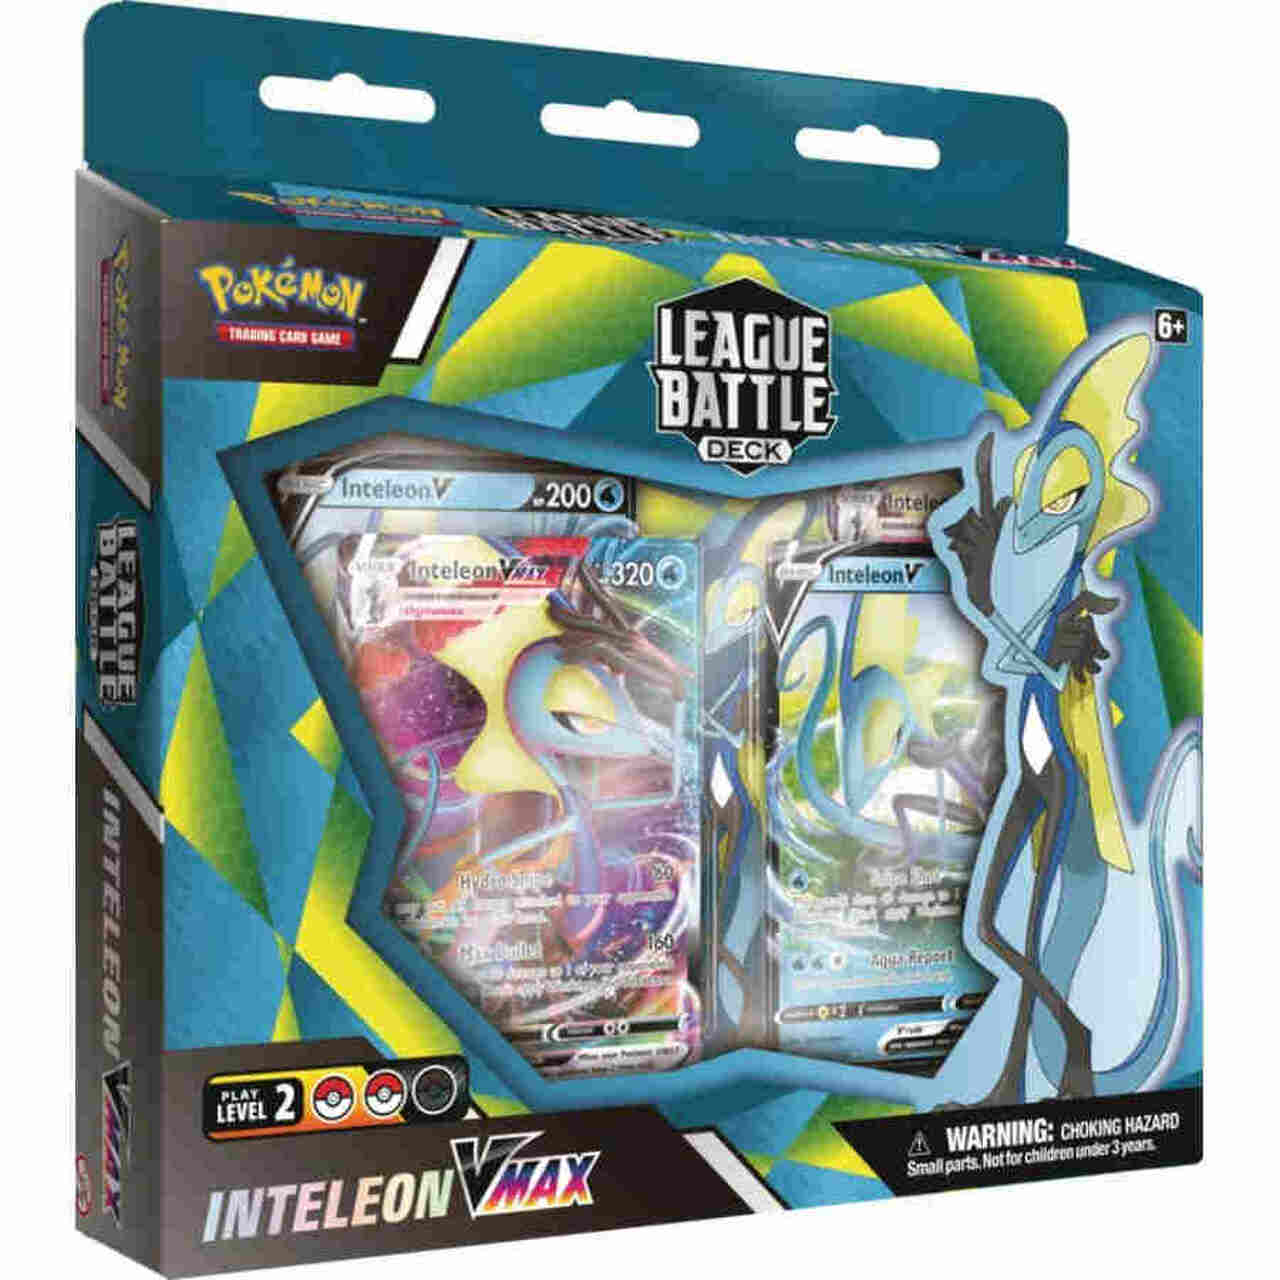 Pokémon Inteleon Vmax League Battle Deck